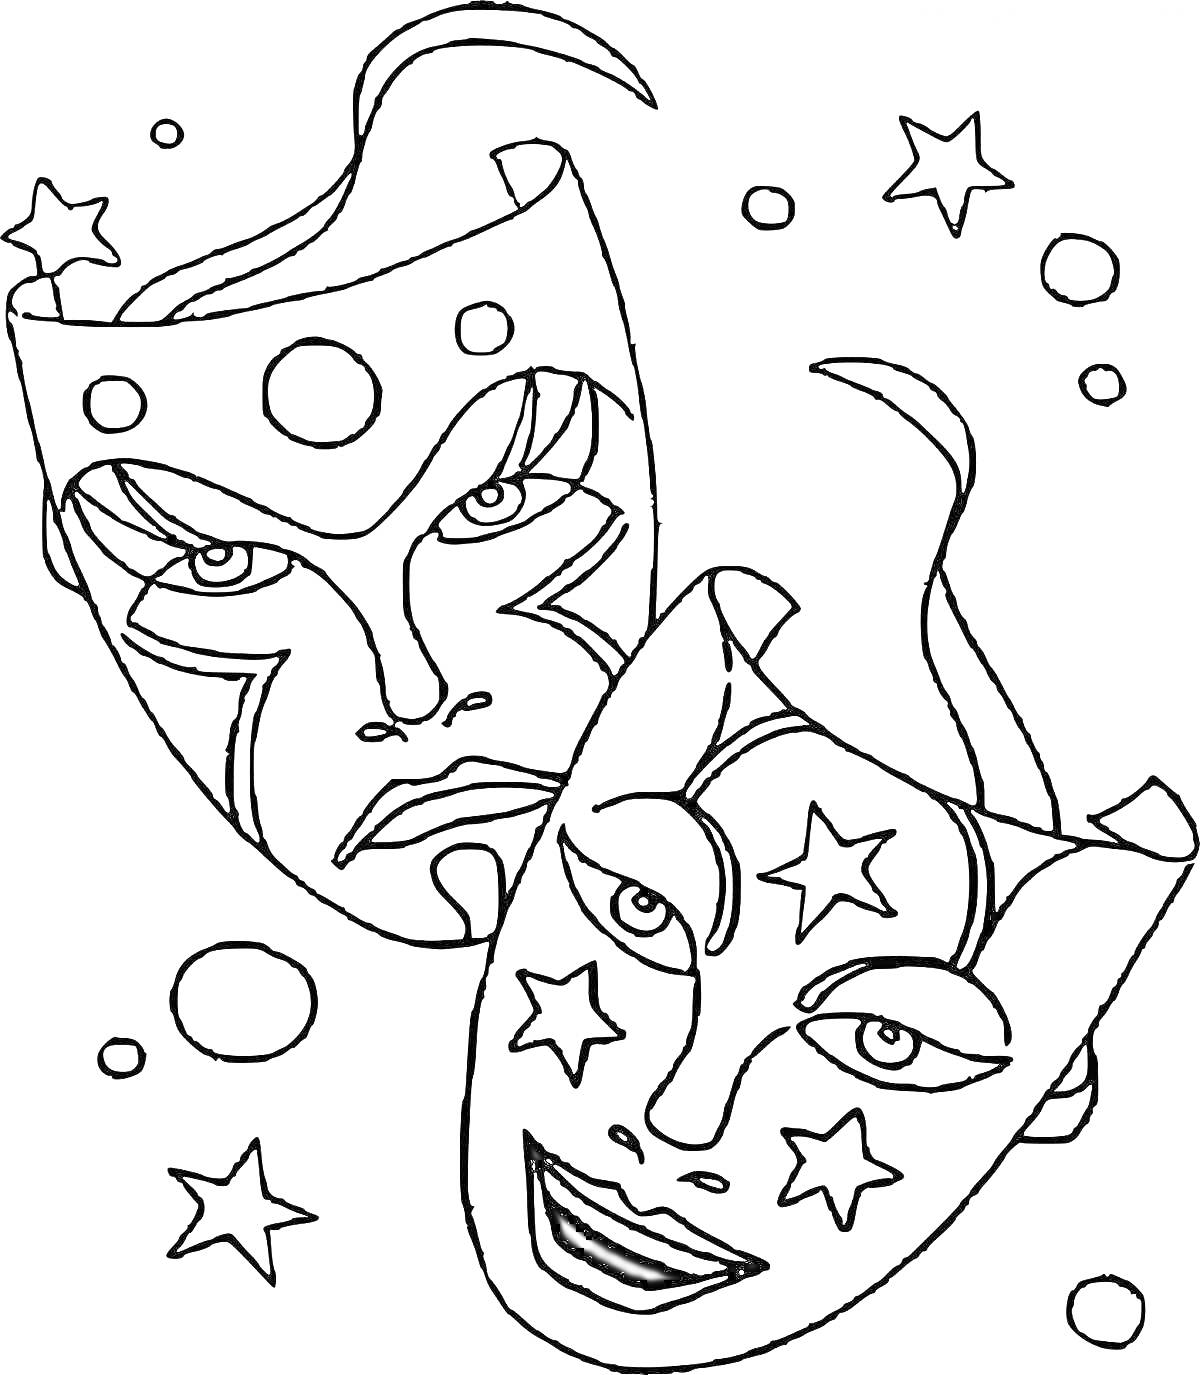 Раскраска театральные маски с звездочками и кругами